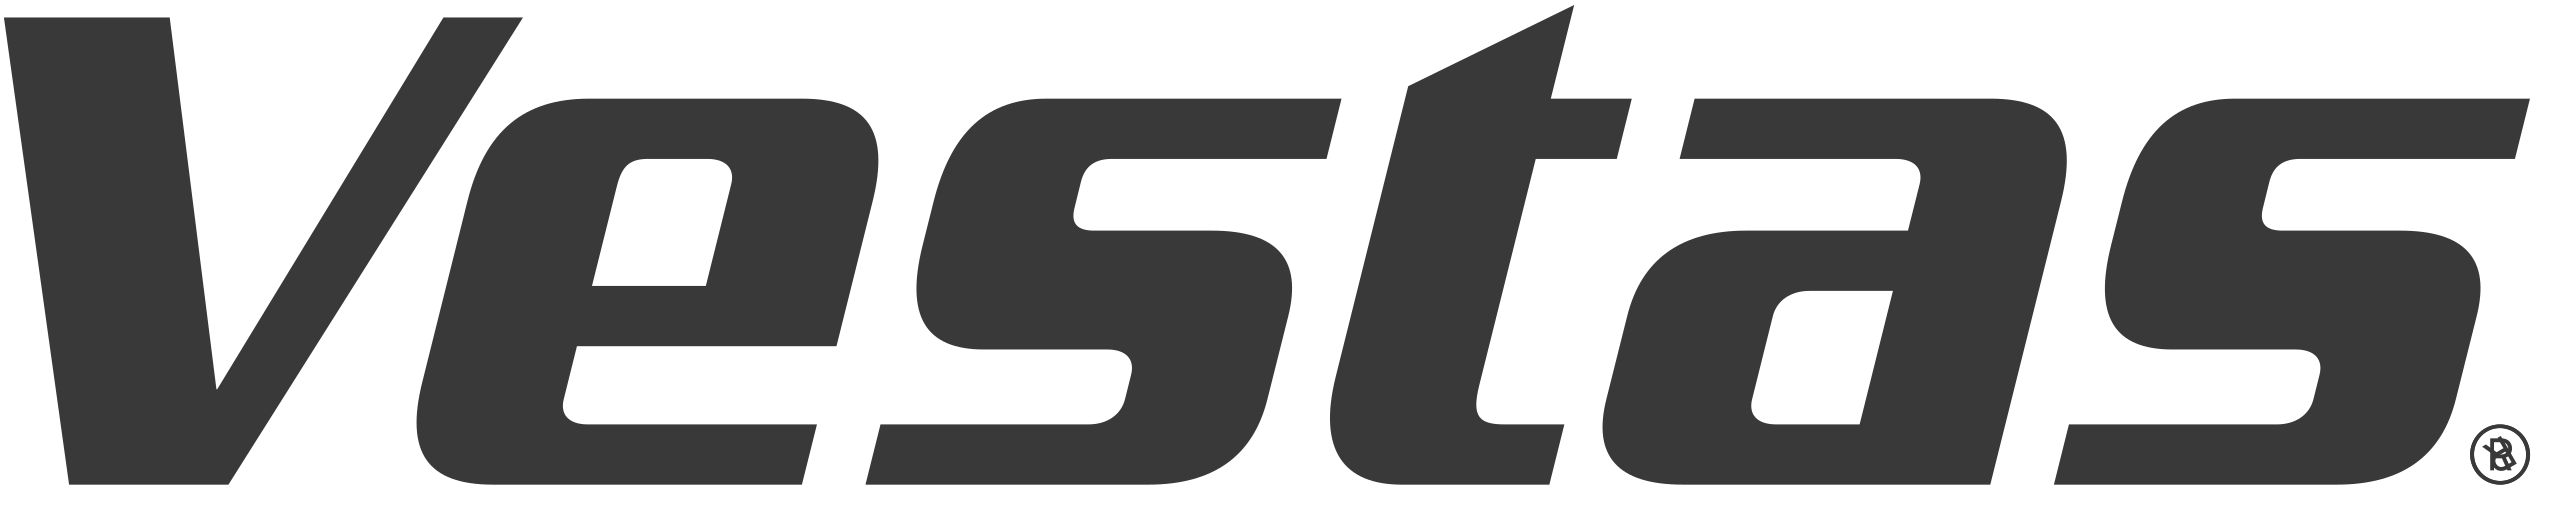 Vestas_logo